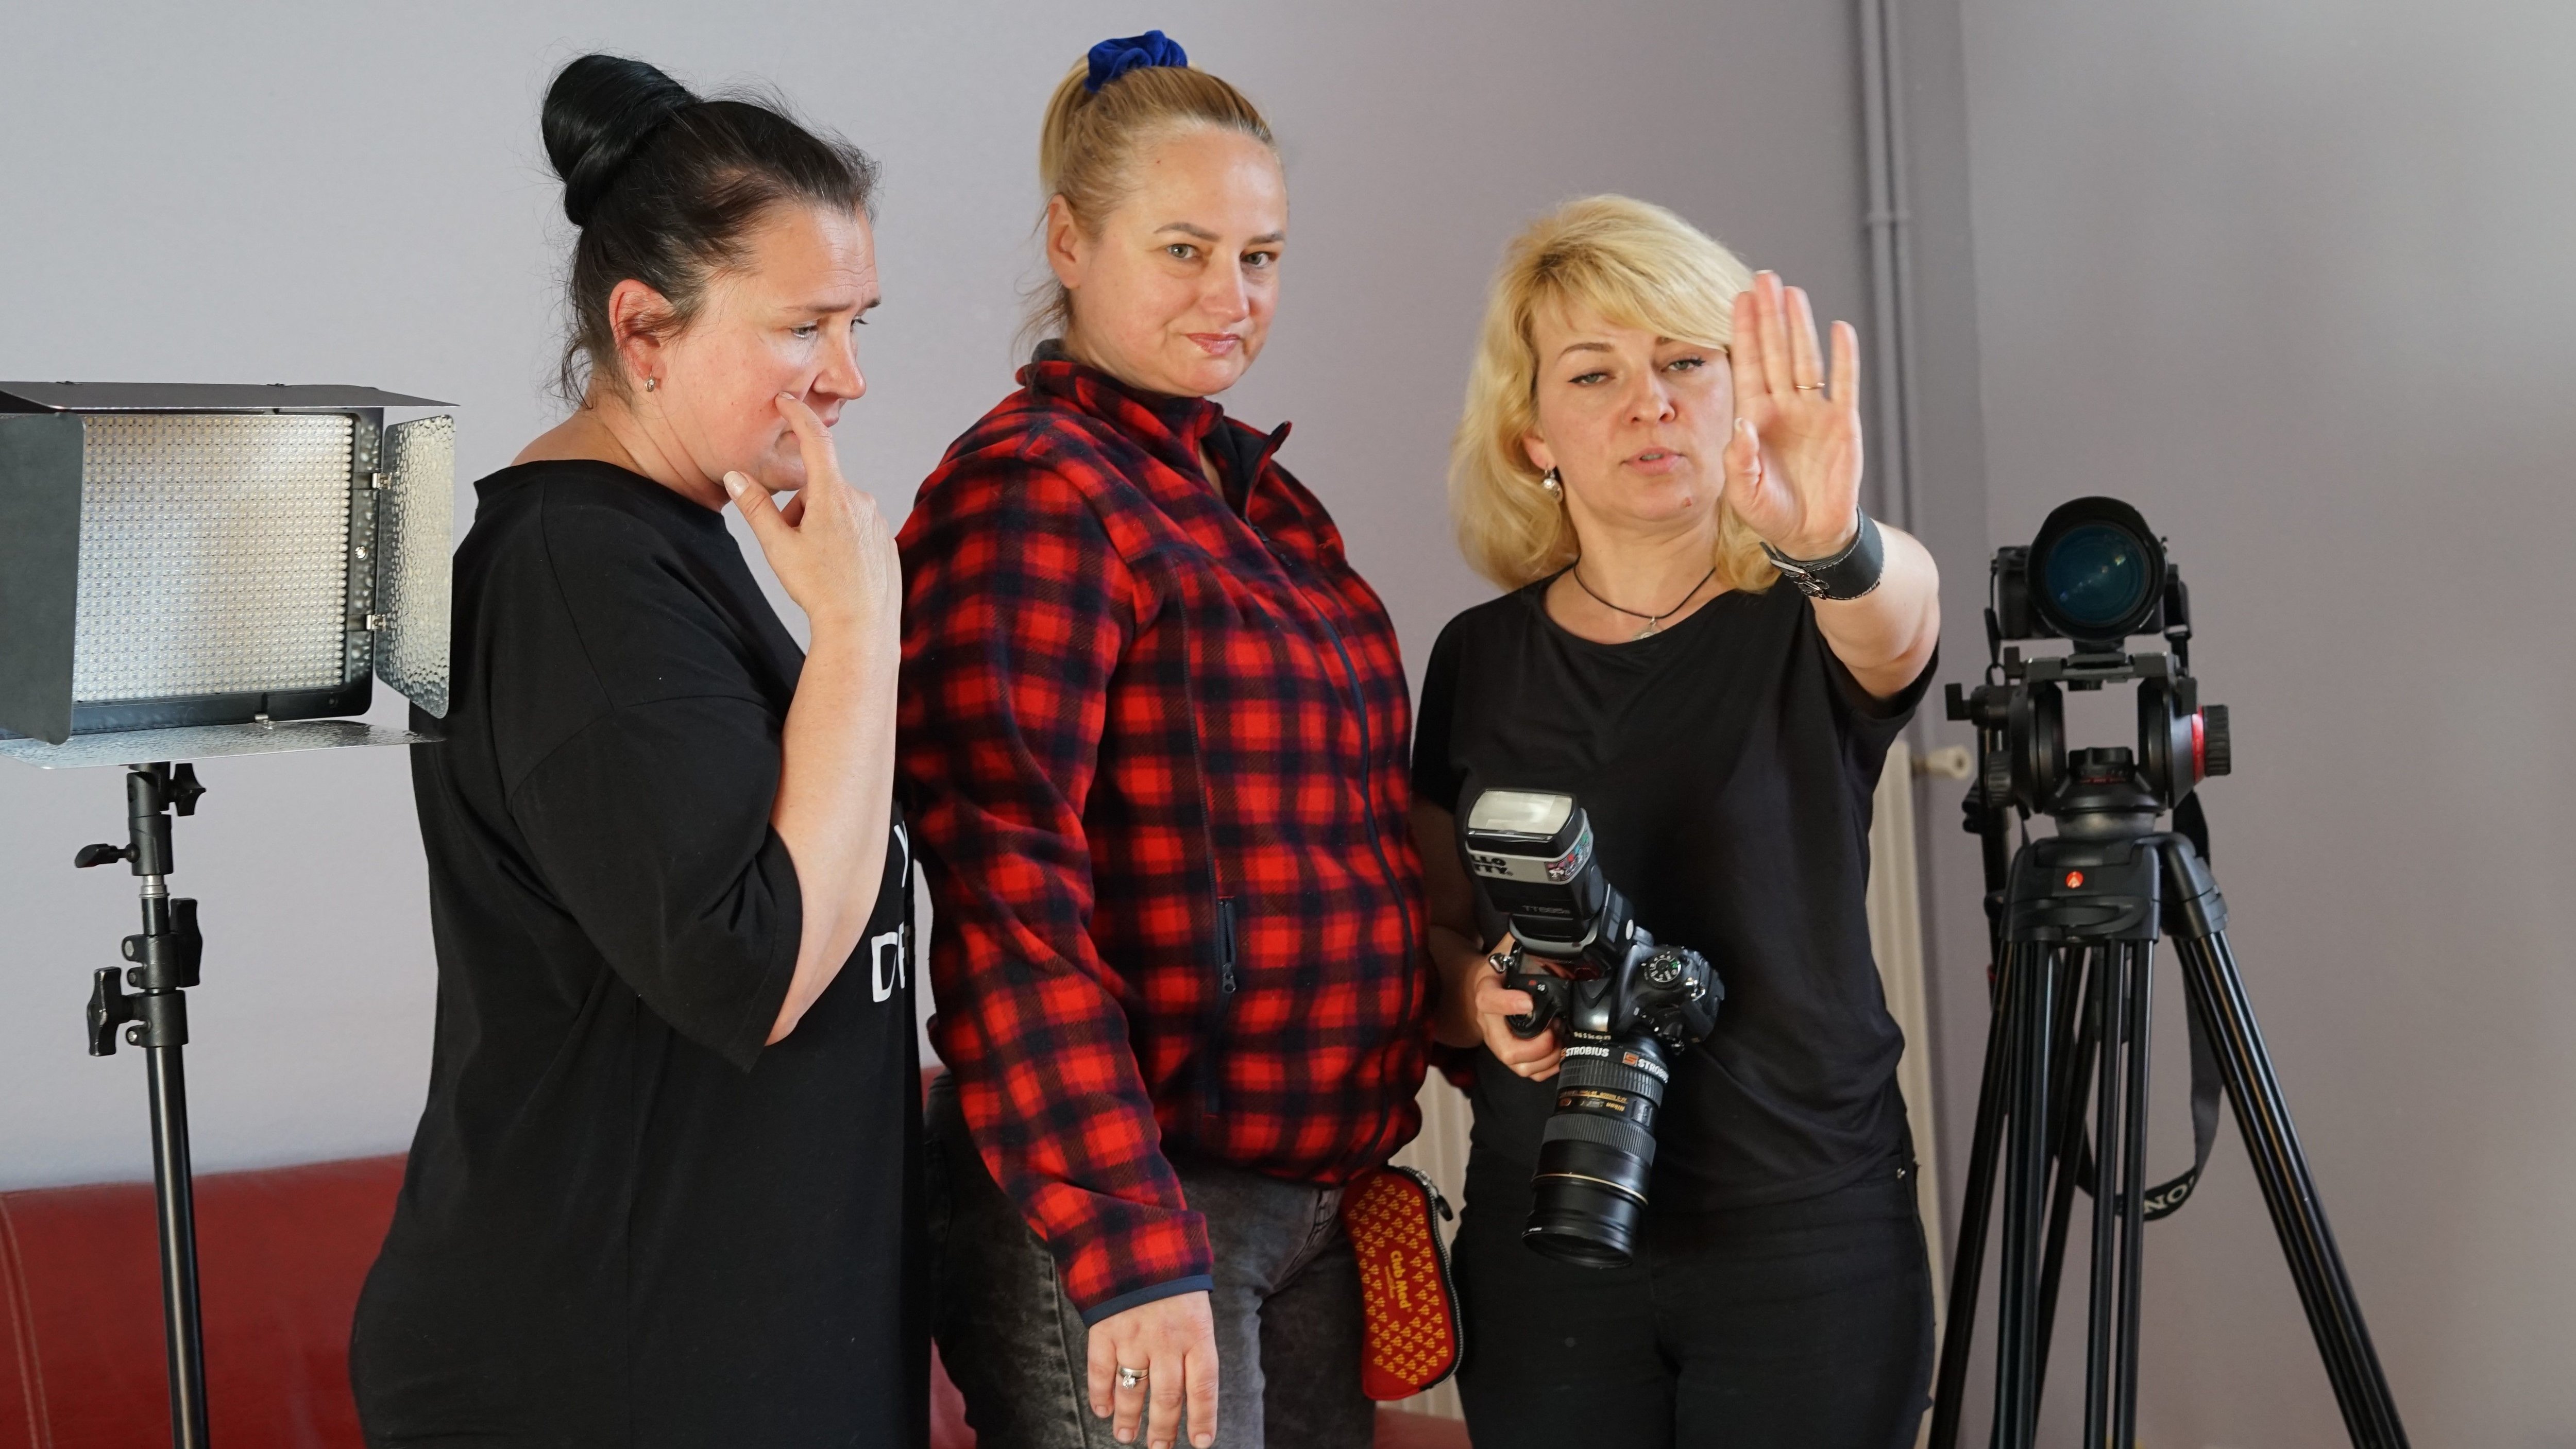 Ce samedi 7 mai 2022, à Fontenay-Trésigny : Tania Suchkova Ladik (au centre), dirigeante de l'agence de production ukrainienne Atasov Film Travel, entourée de ses collègues, Julia Ladik (à droite) et Tatyana Scherbak (à gauche). LP/Maxime François